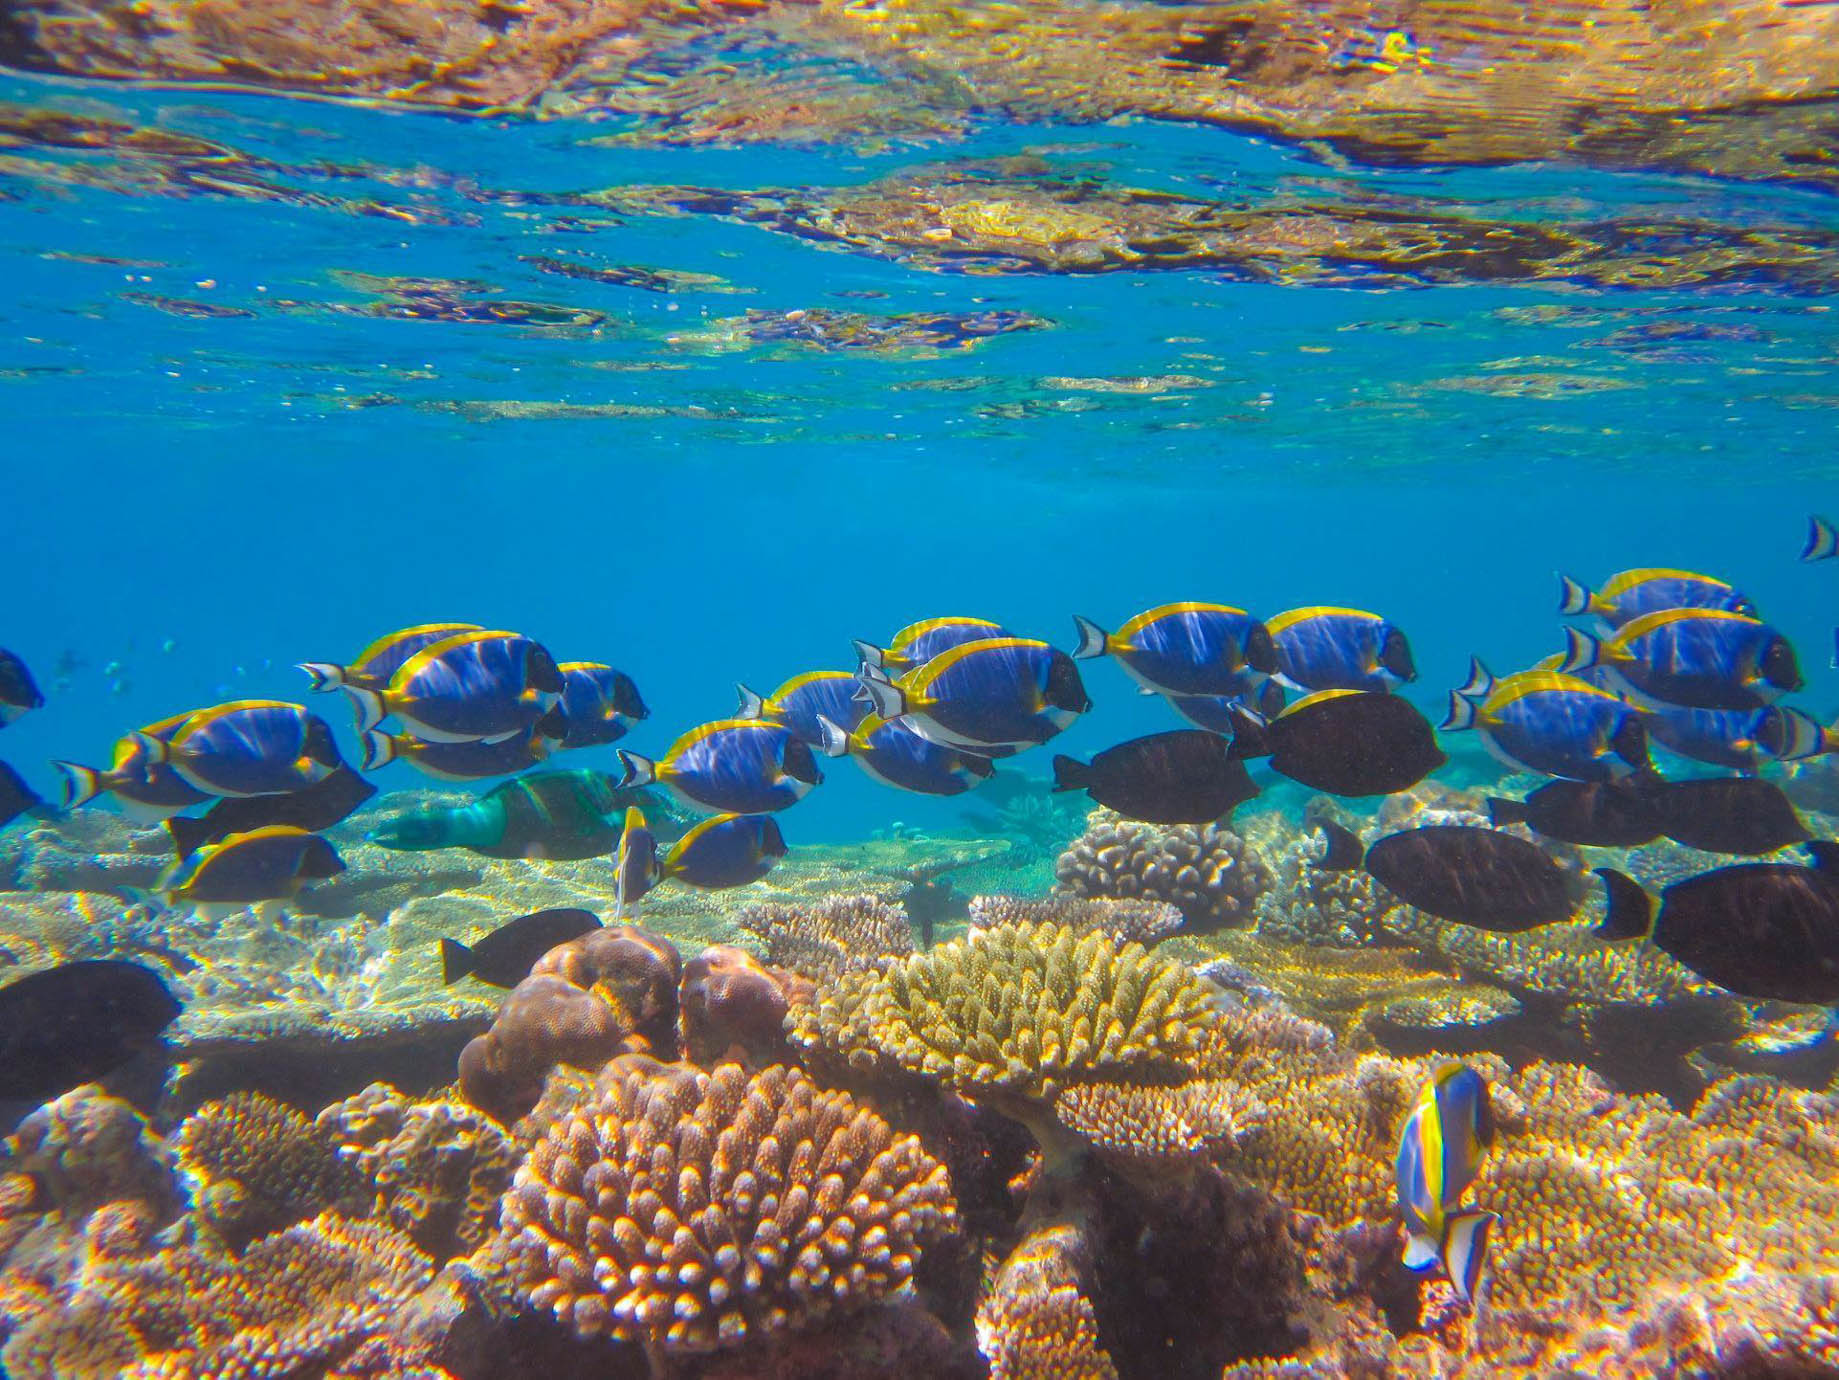 Anantara Kihavah Maldives Villas Resort – Baa Atoll, Maldives – House Reef Underwater View